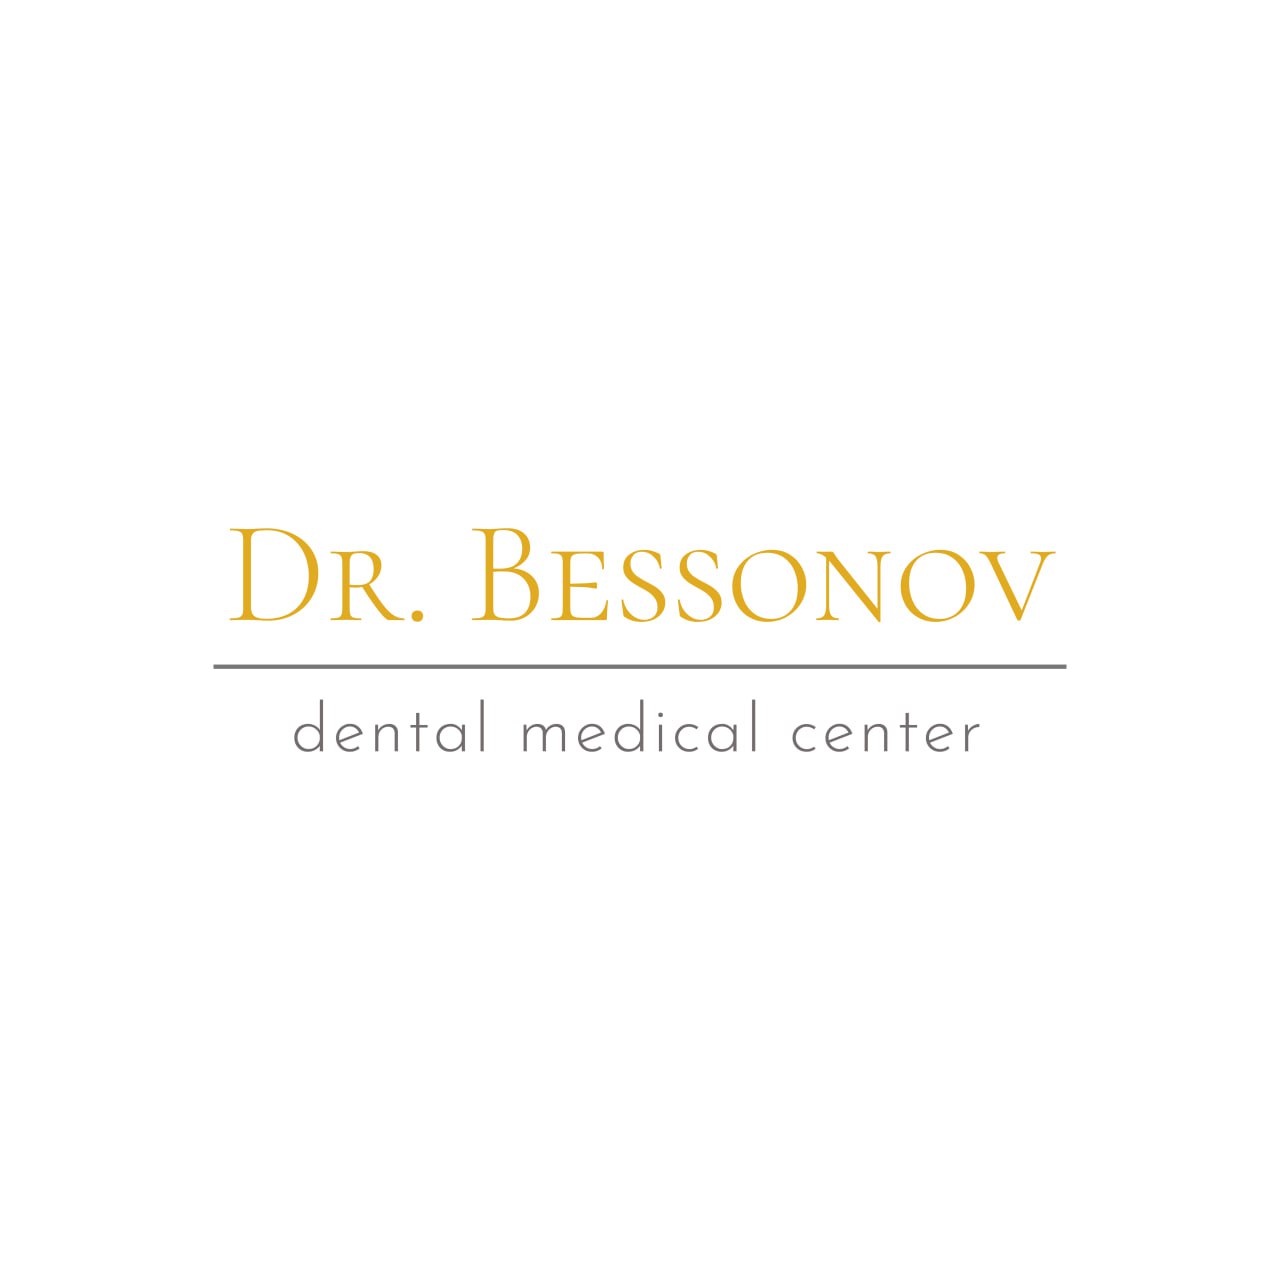 Dr. Bessonov dental medical center